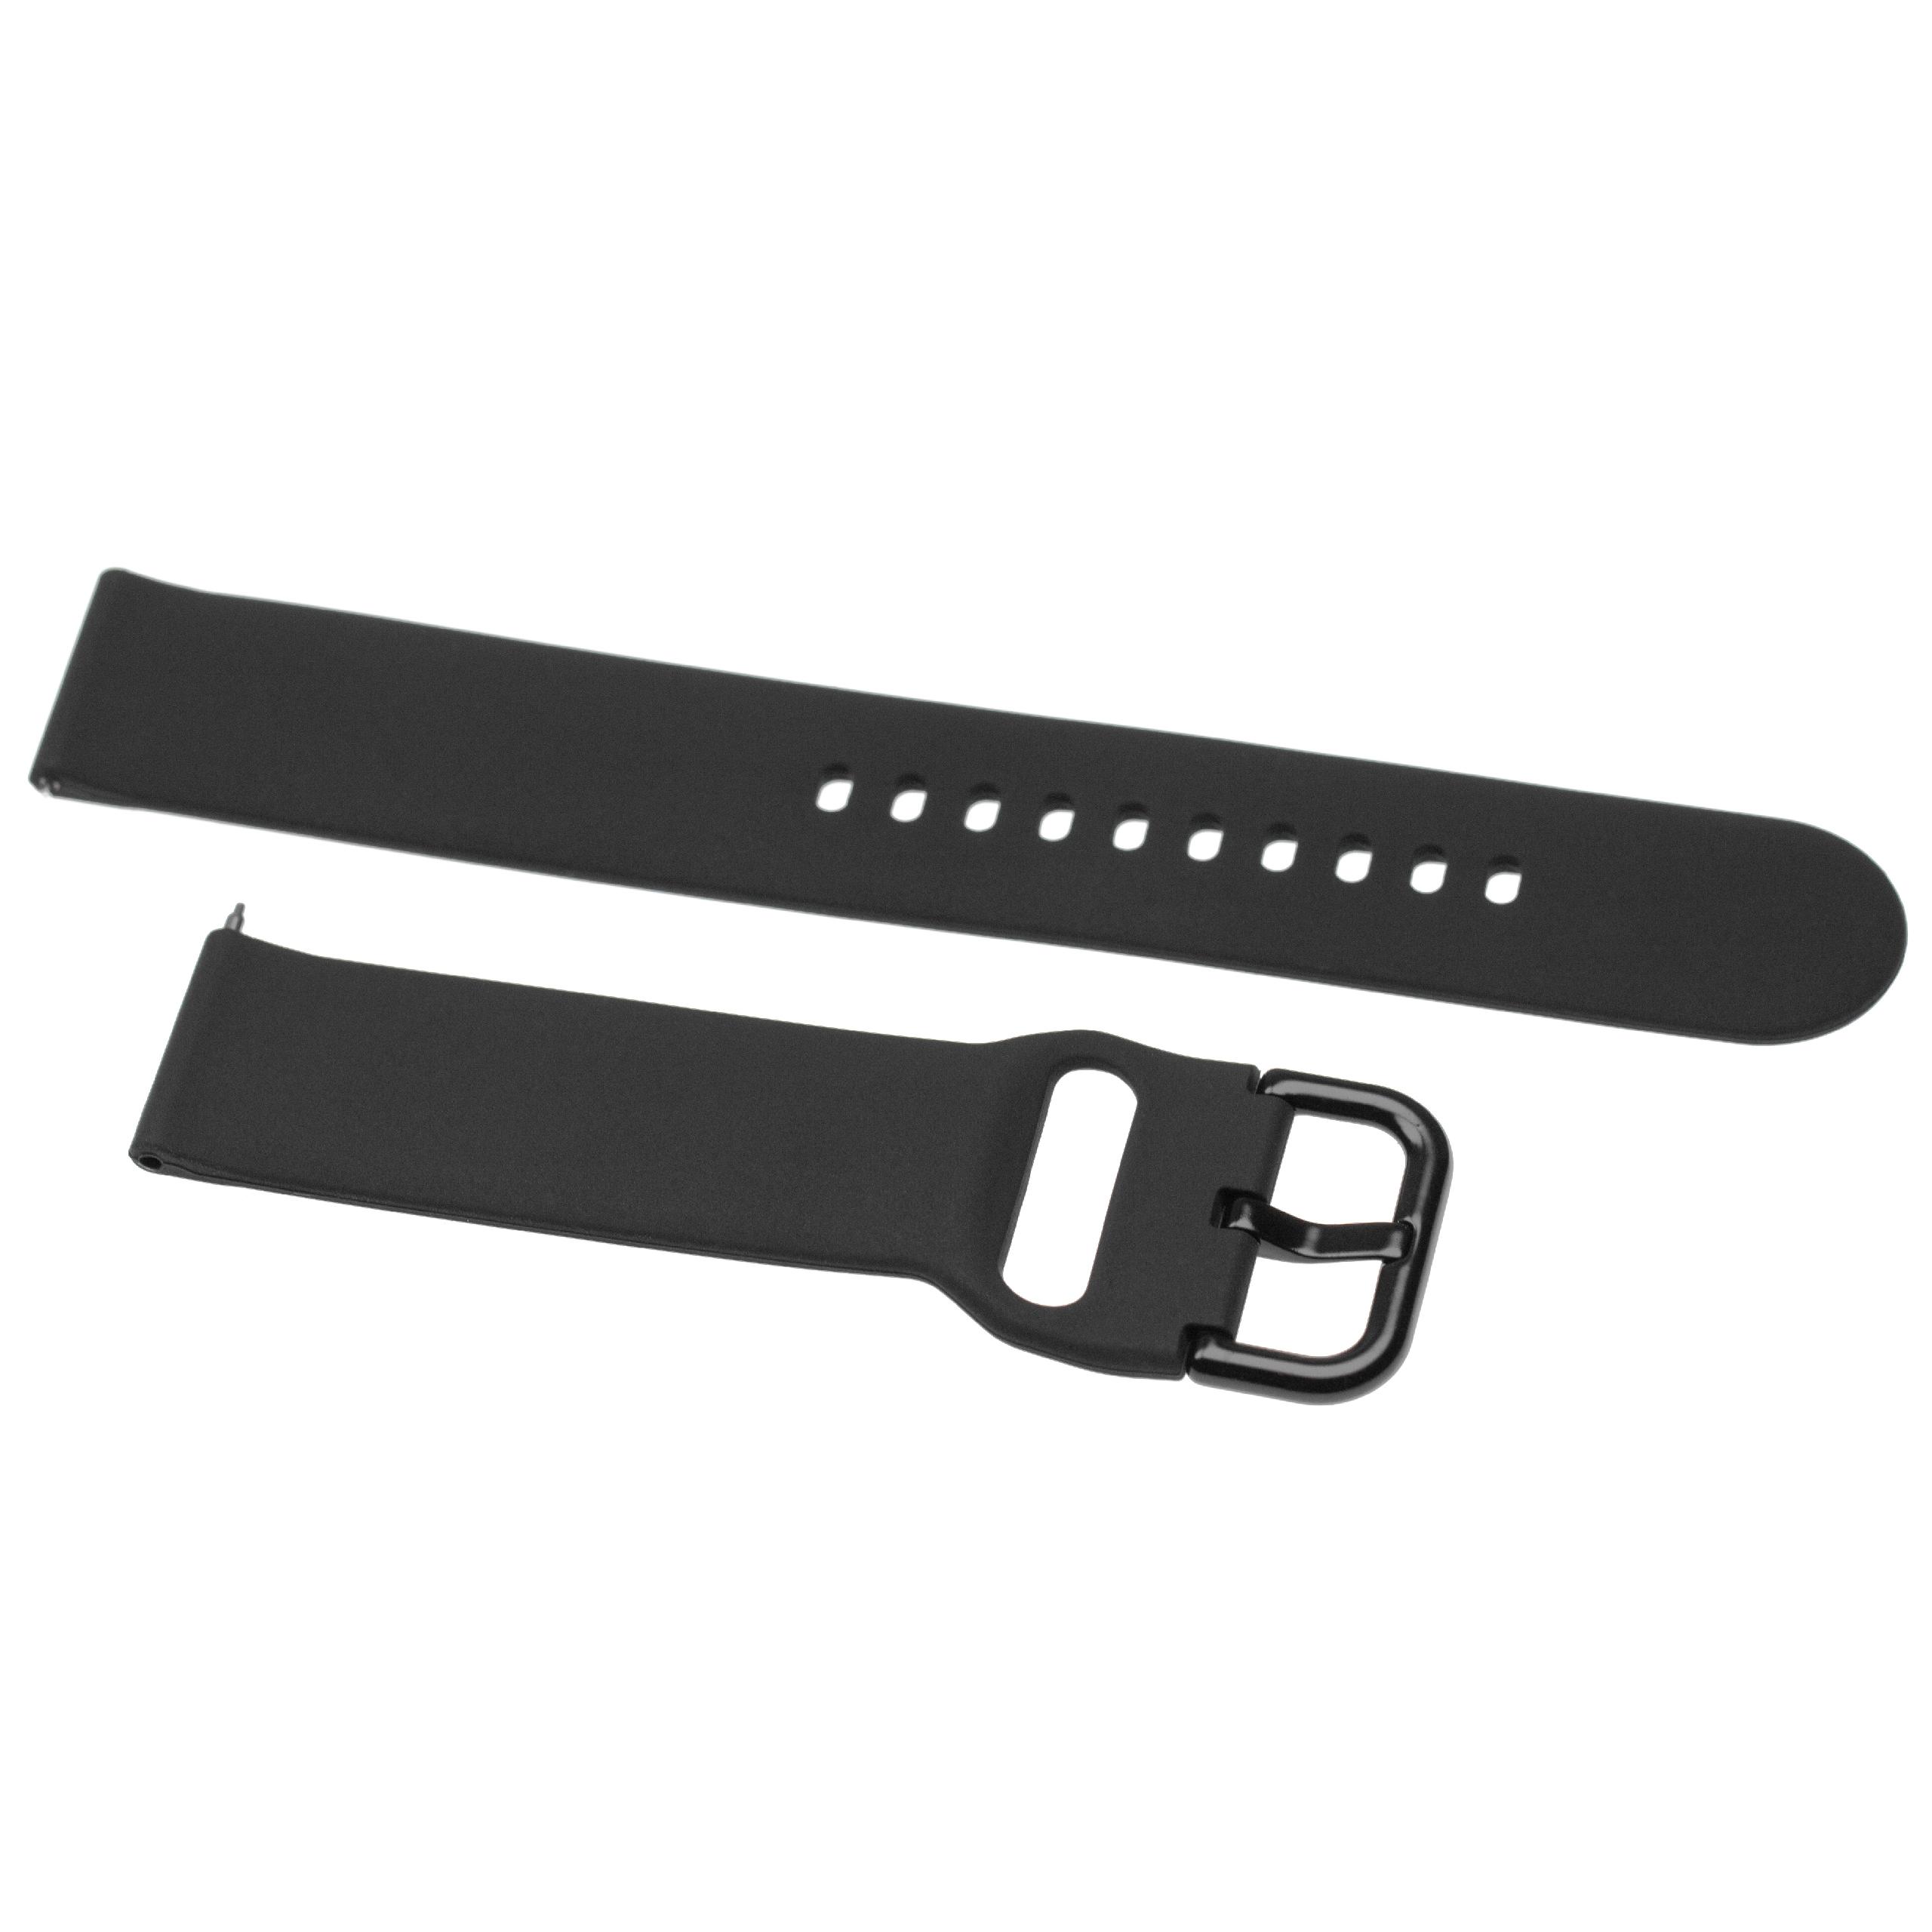 Armband für Samsung Galaxy Watch Smartwatch - 13 + 8,8 cm lang, 20mm breit, Silikon, schwarz